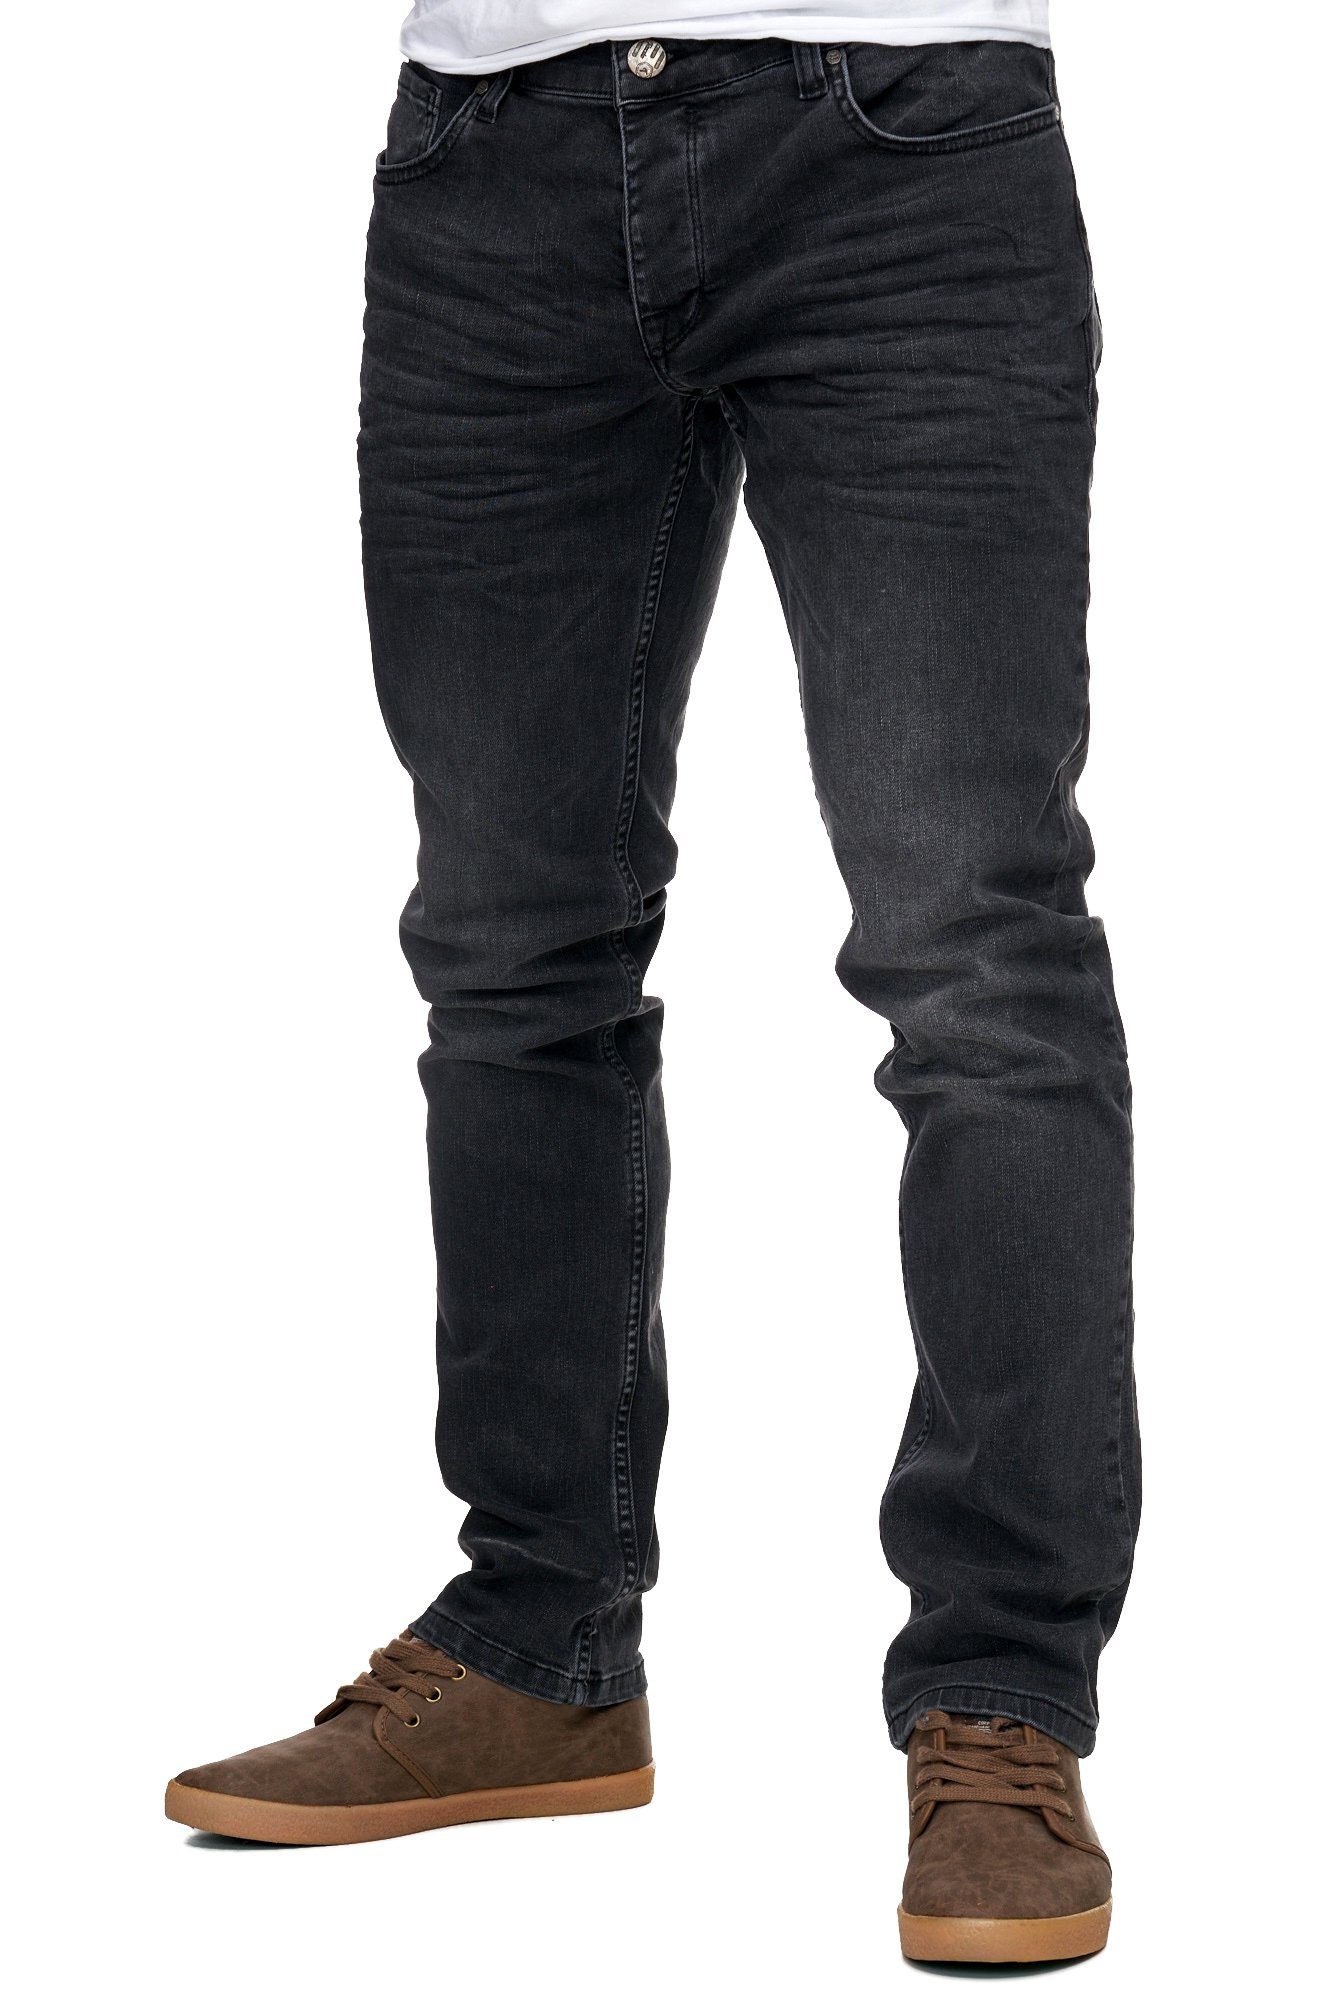 Style Jeans-Hose Basic Reslad Slim schwarz Stretch-Denim Stretch-Jeans Slim Jeans-Herren Jeans-Hose Fit Reslad Stretch Fit